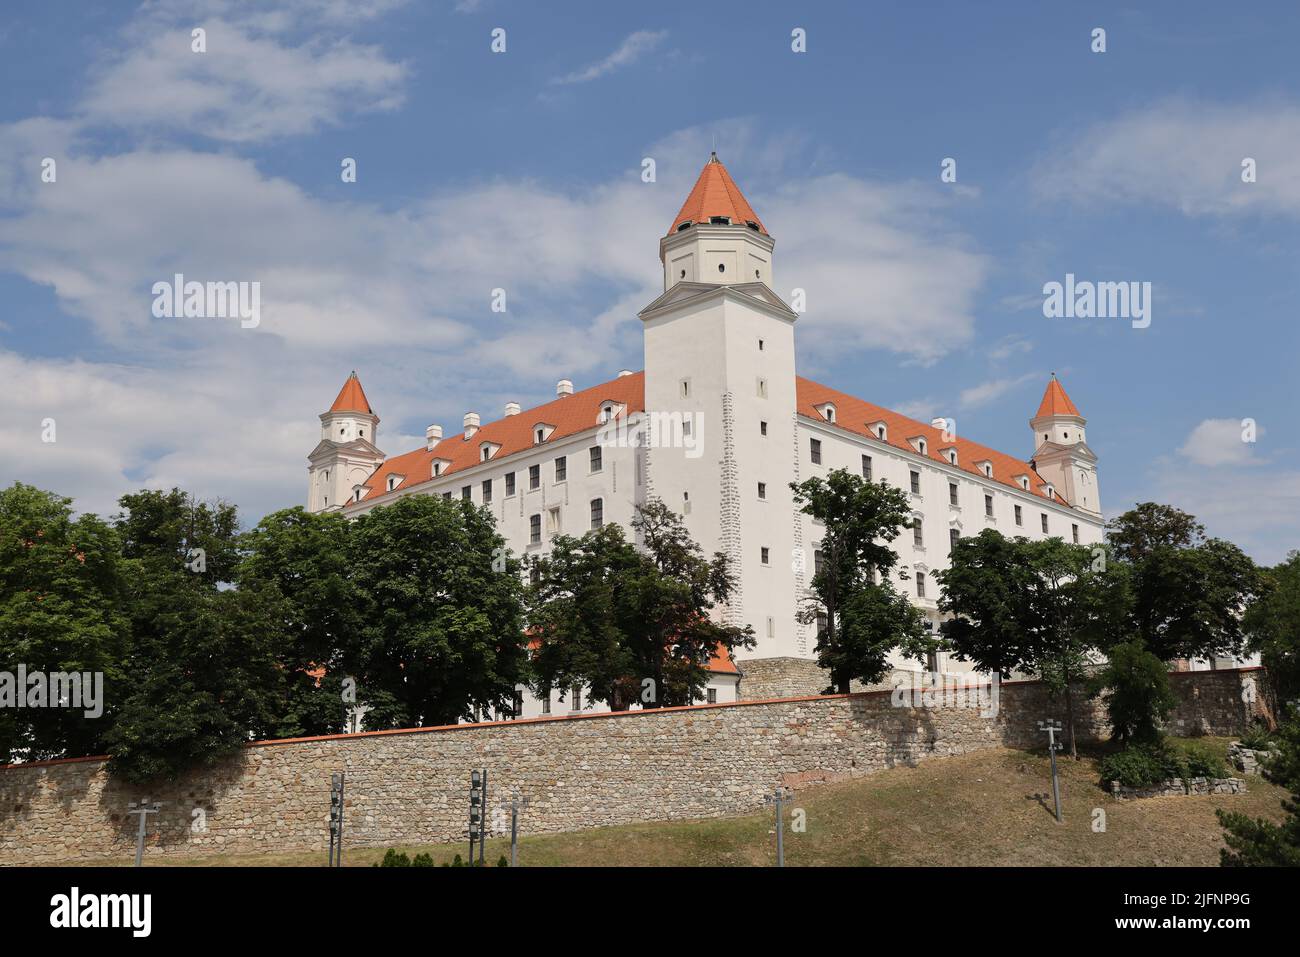 Bratislava Castle in Bratislava, Slovakia Stock Photo